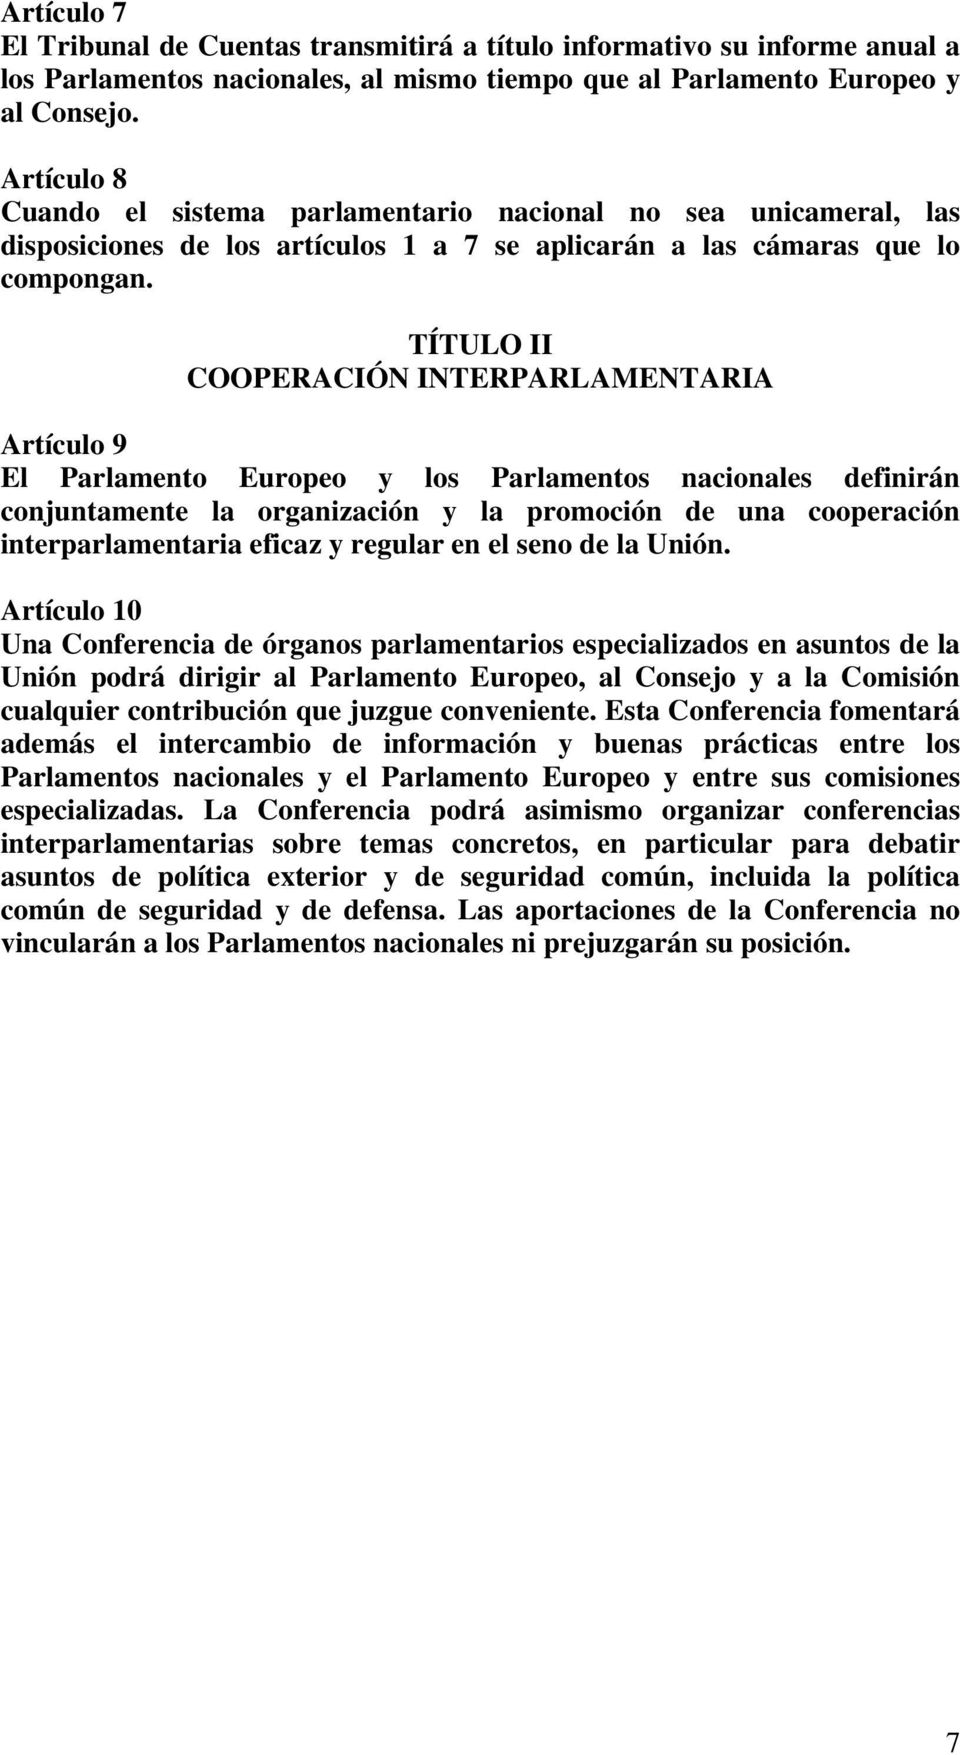 TÍTULO II COOPERACIÓN INTERPARLAMENTARIA Artículo 9 El Parlamento Europeo y los Parlamentos nacionales definirán conjuntamente la organización y la promoción de una cooperación interparlamentaria